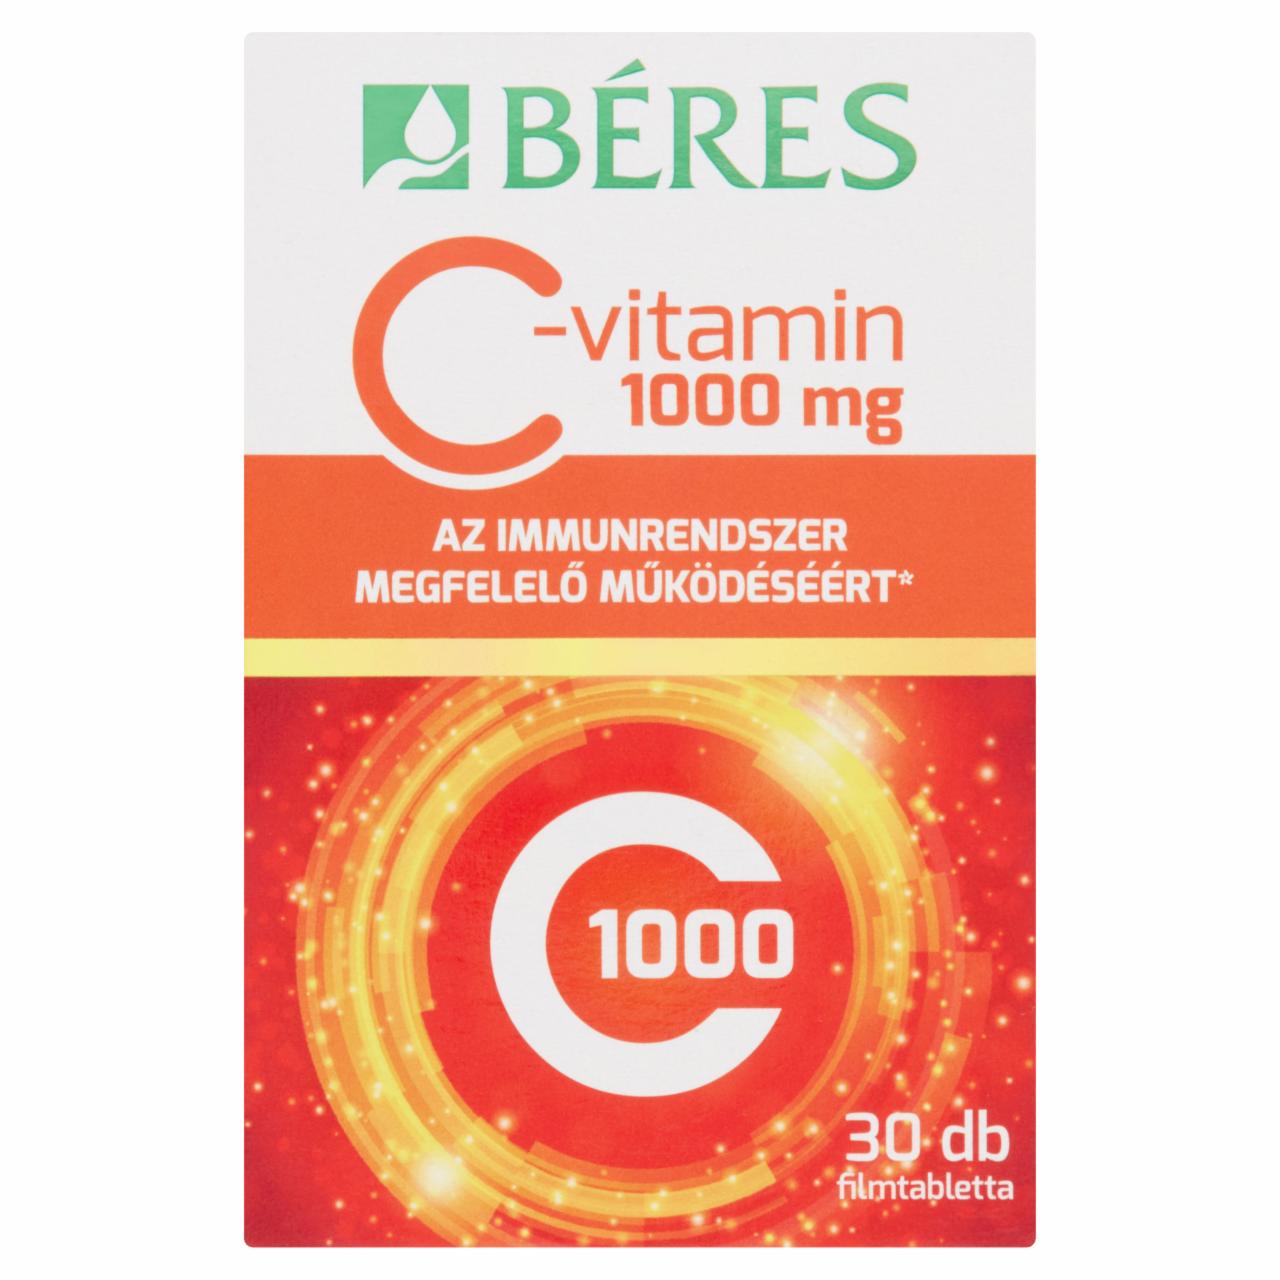 Képek - Béres C-vitamin 1000 mg étrend-kiegészítő készítmény 30 db 46,5 g